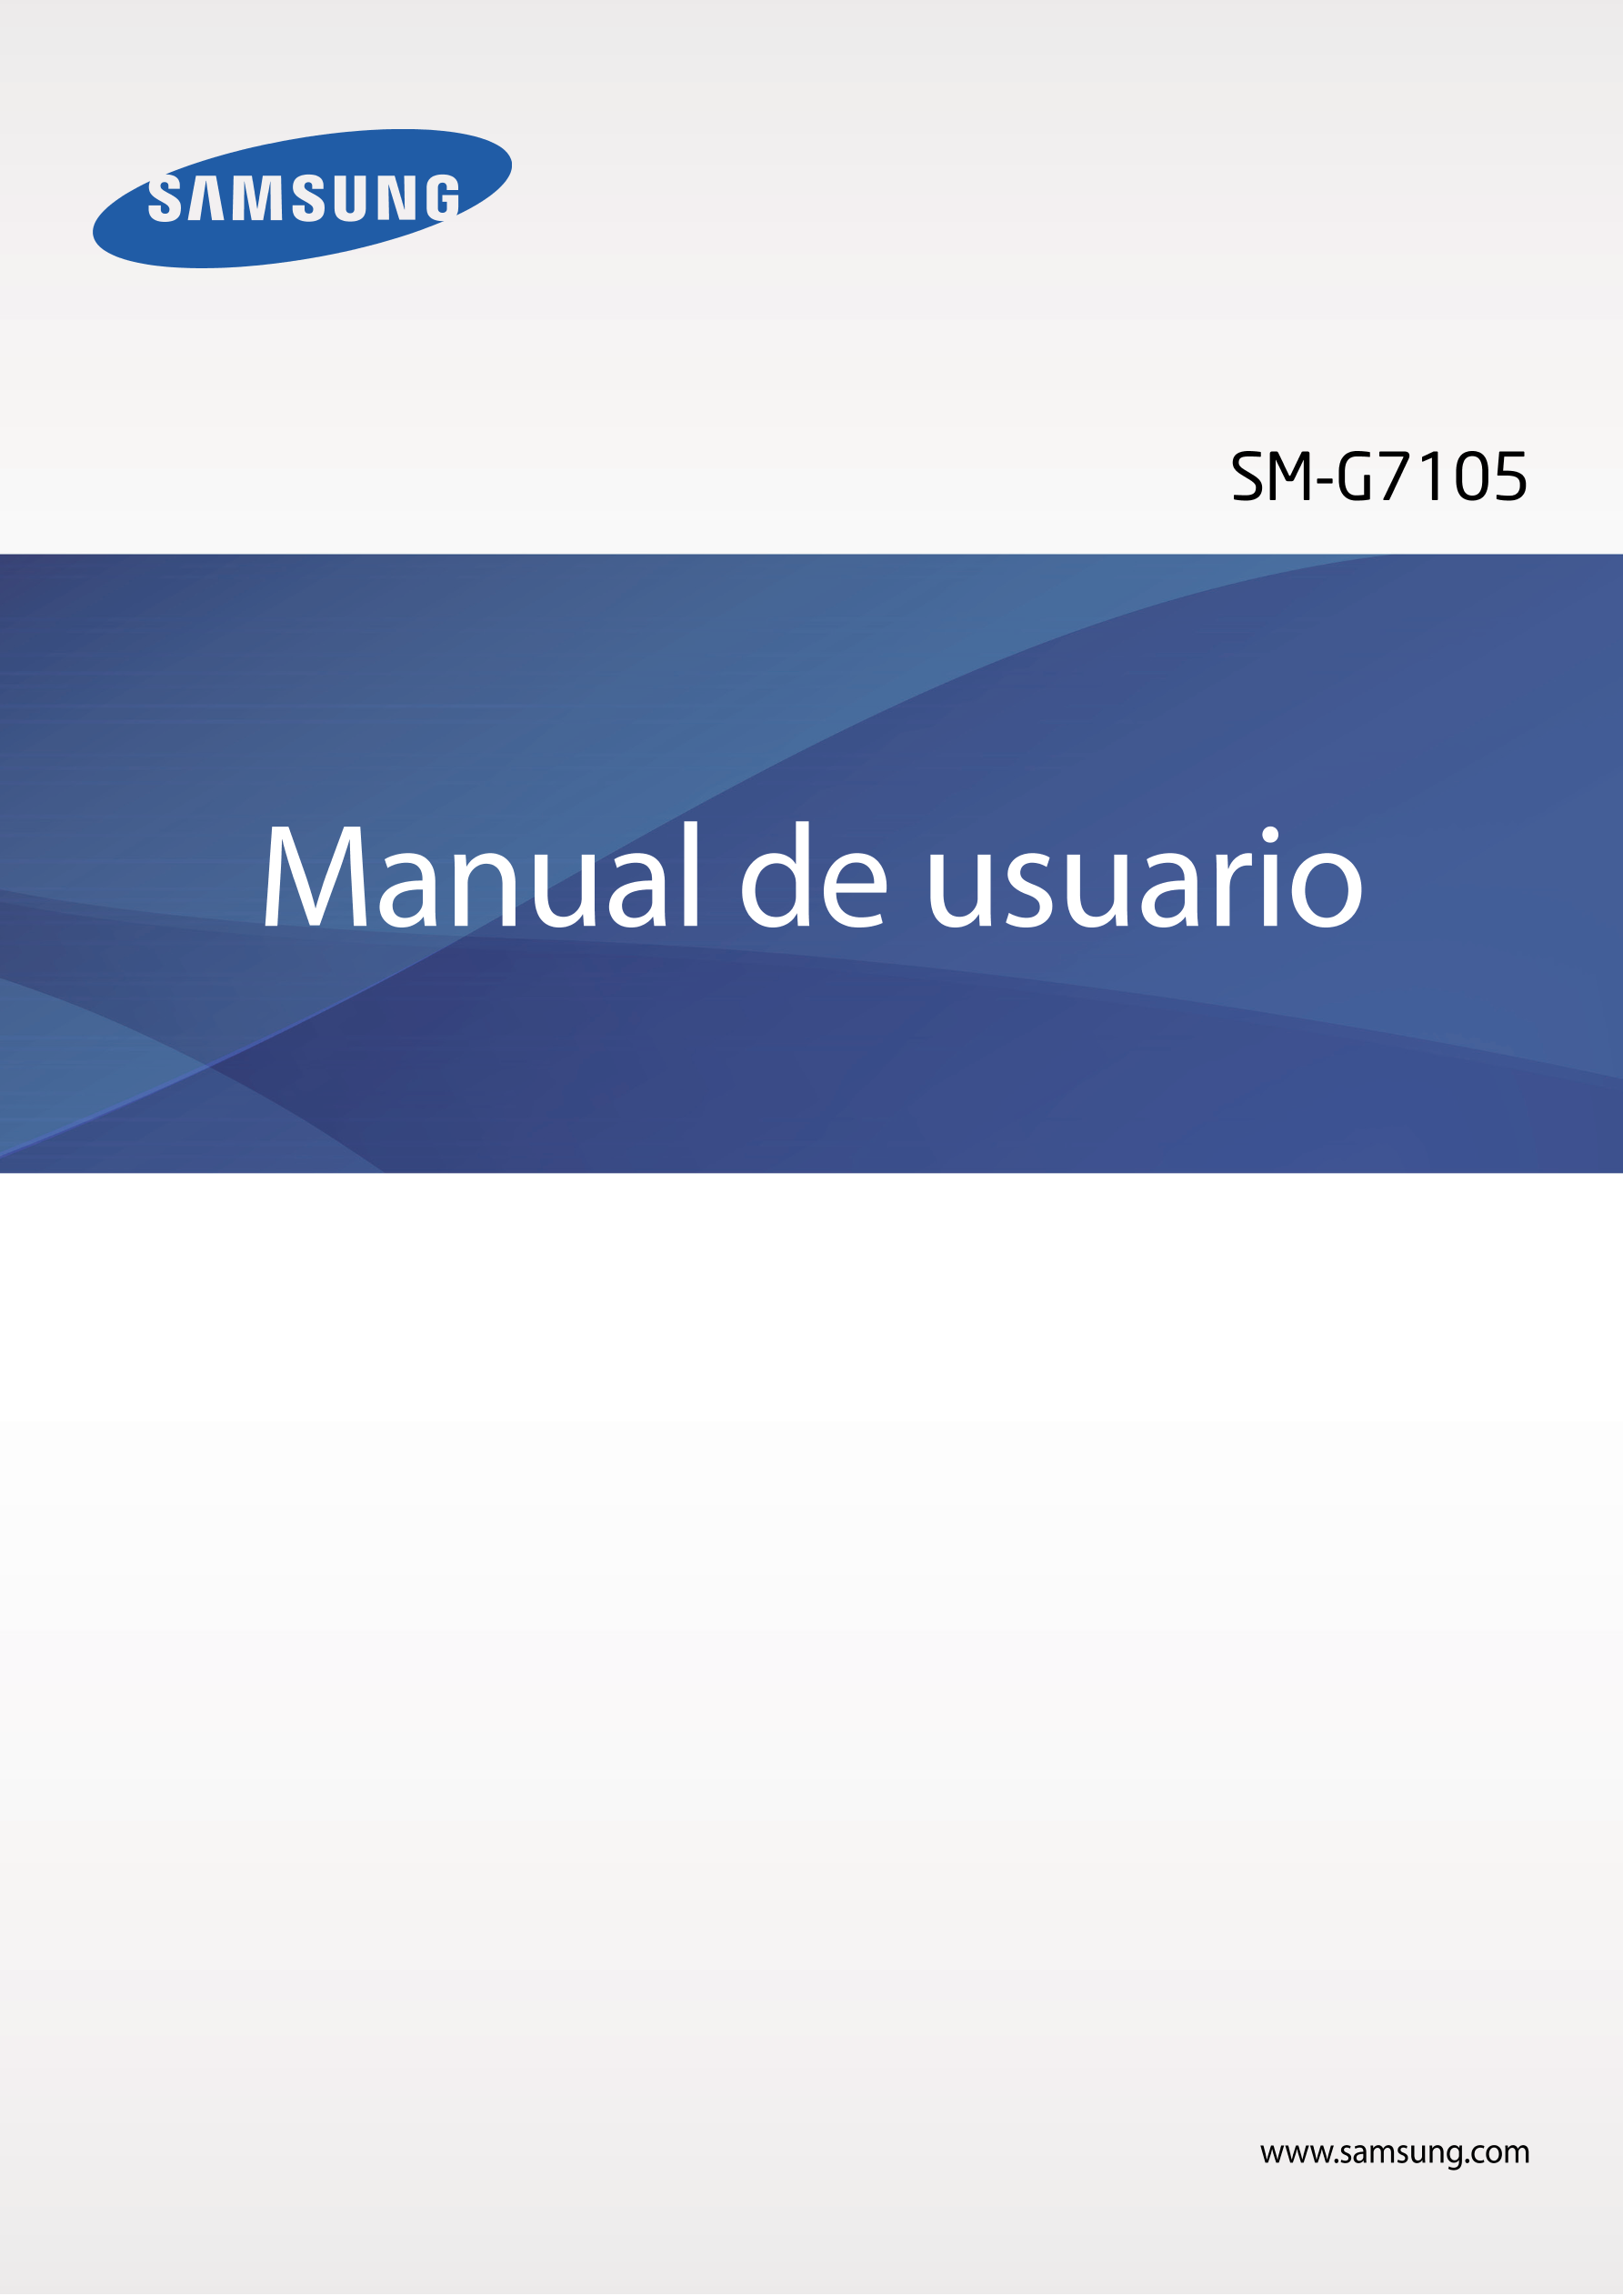 SM-G7105
Manual de usuario
www.samsung.com